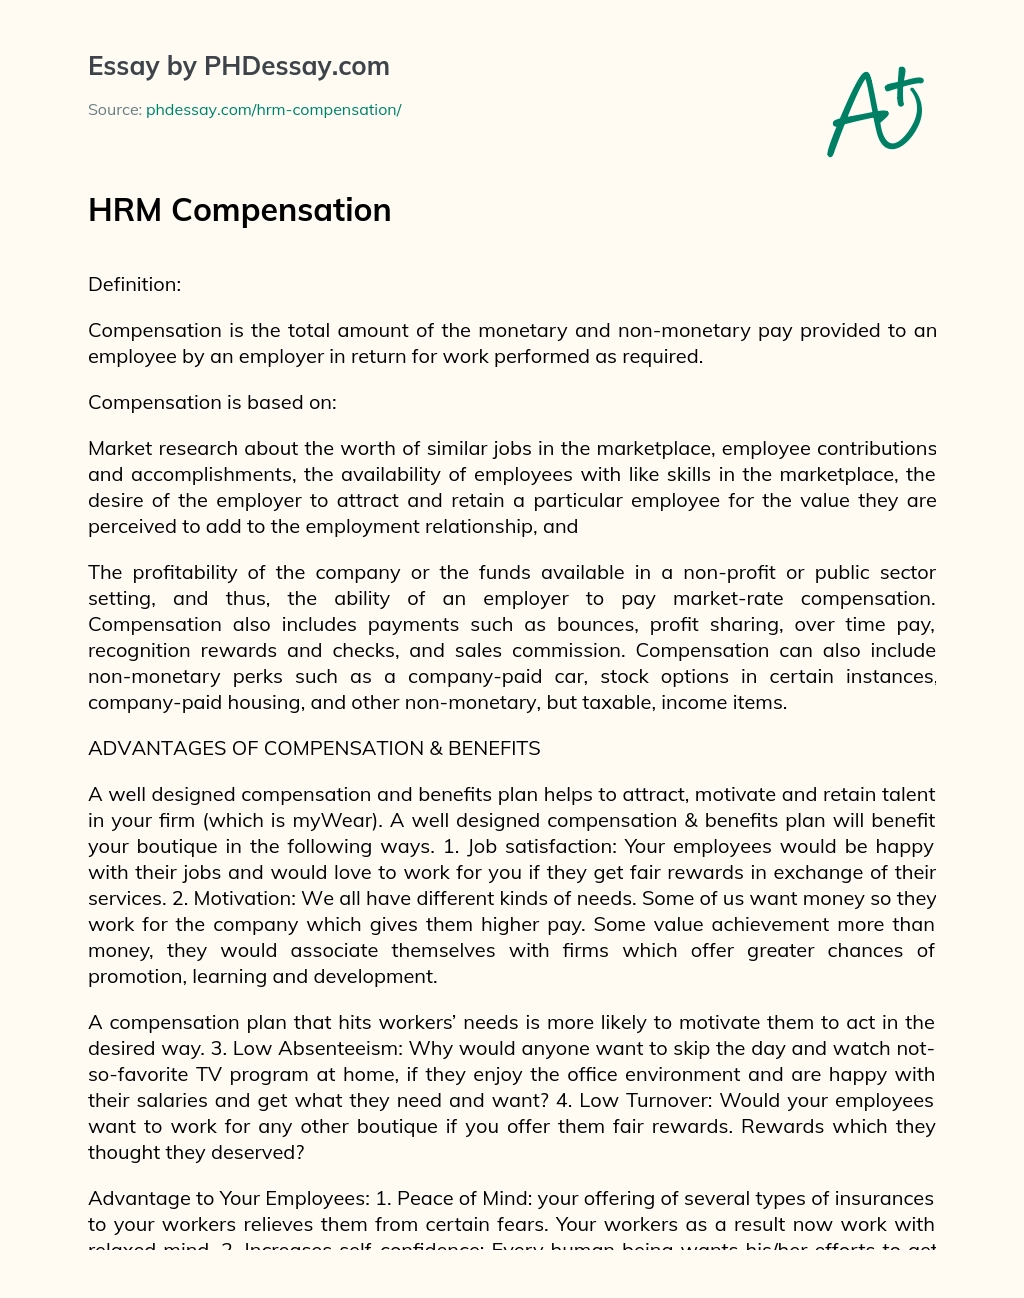 HRM Compensation essay